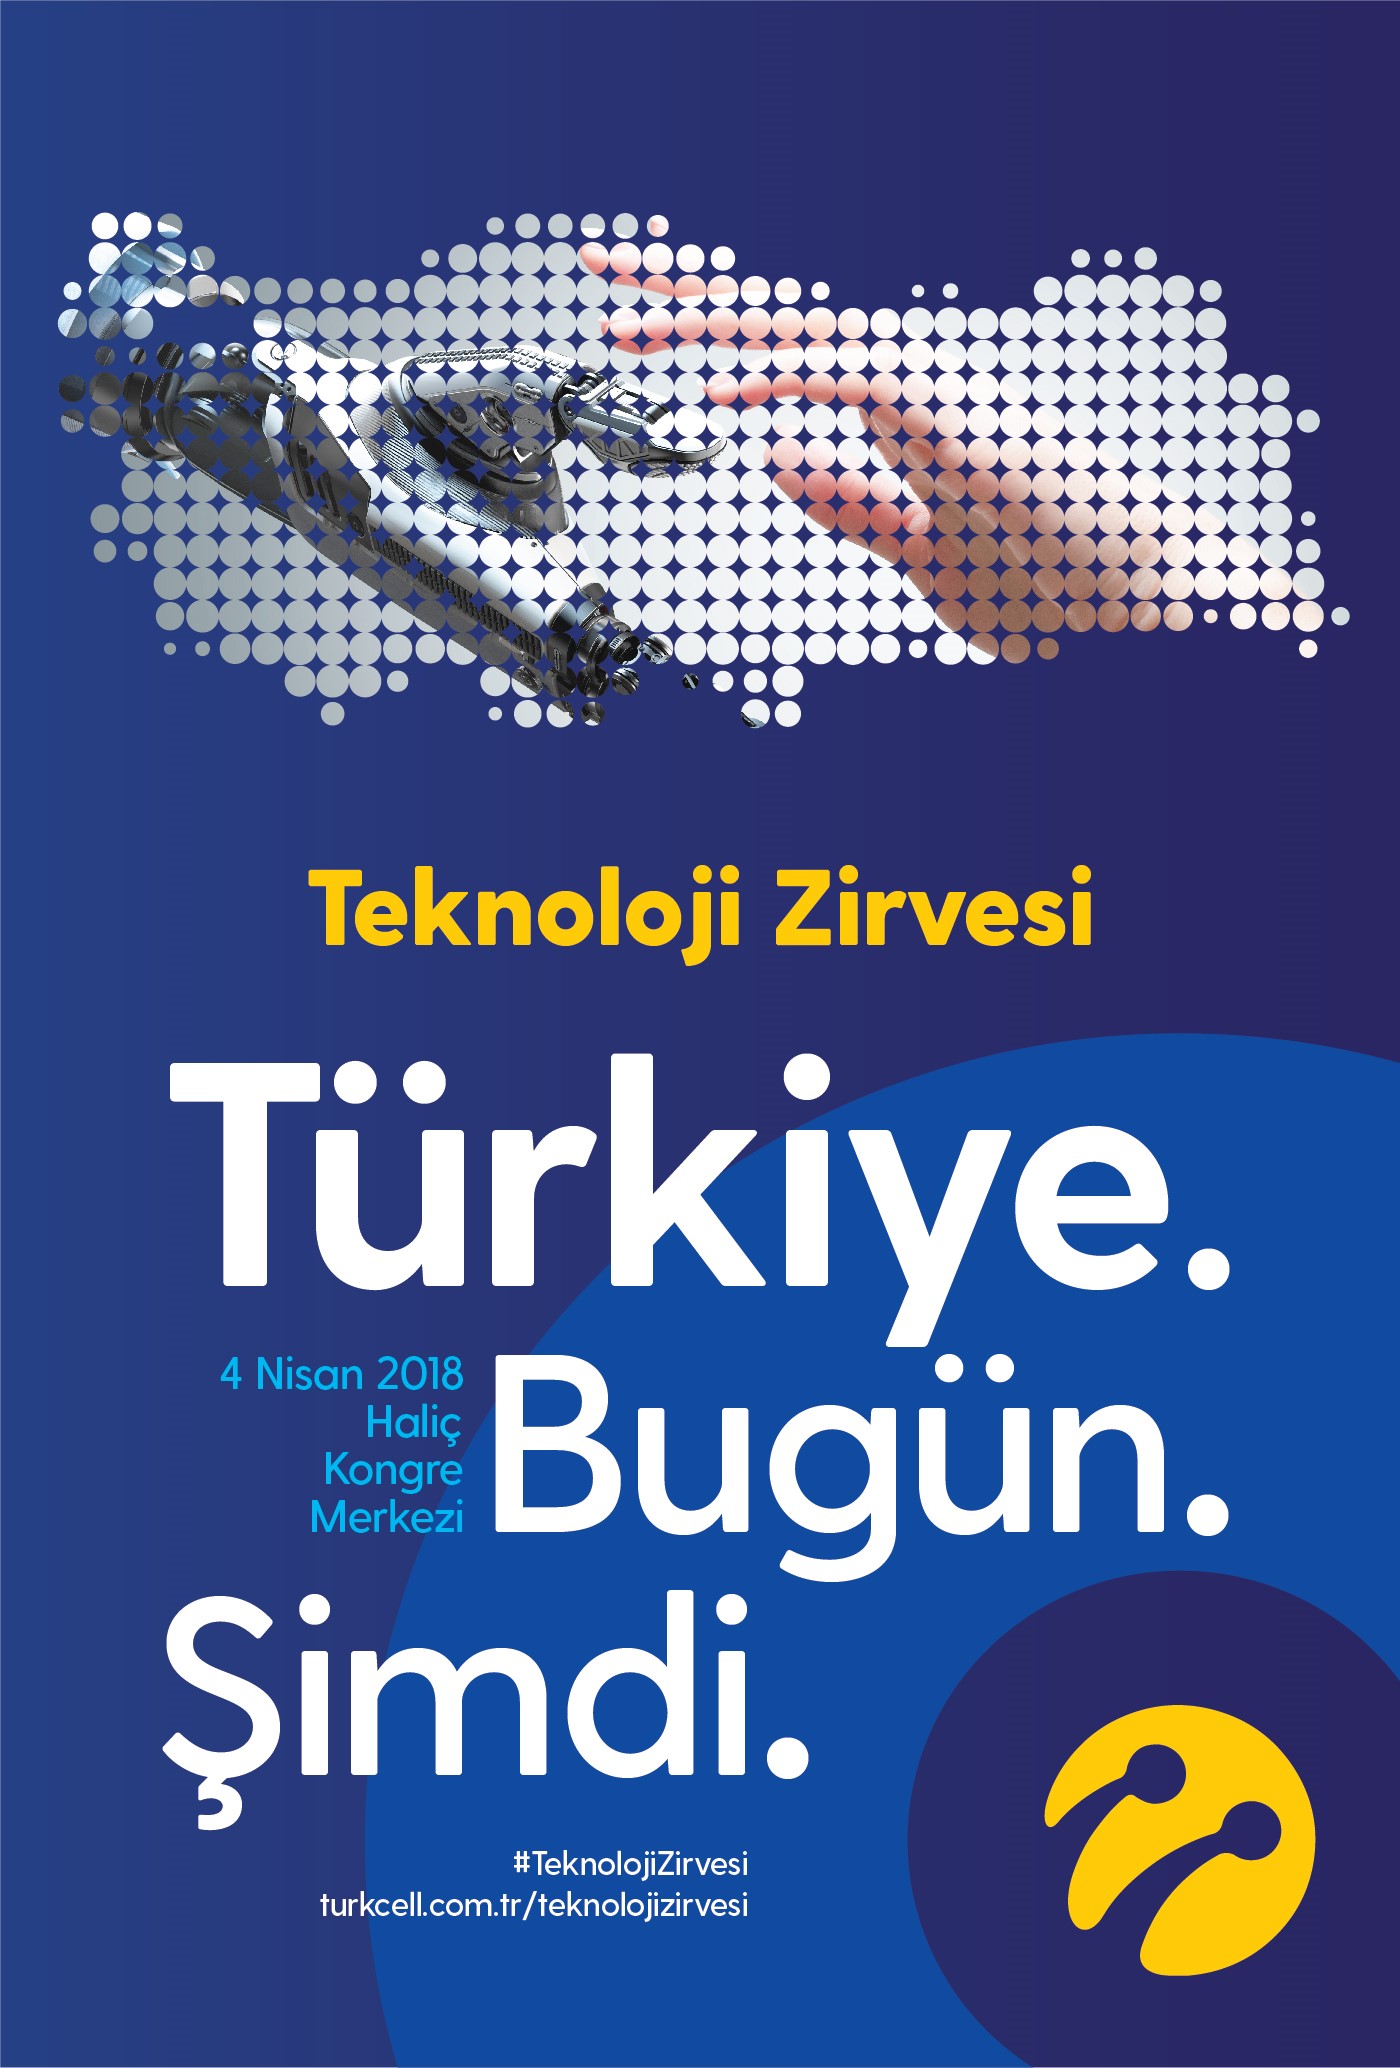 Turkcell Teknoloji Zirvesi 2018 için geri sayım başladı